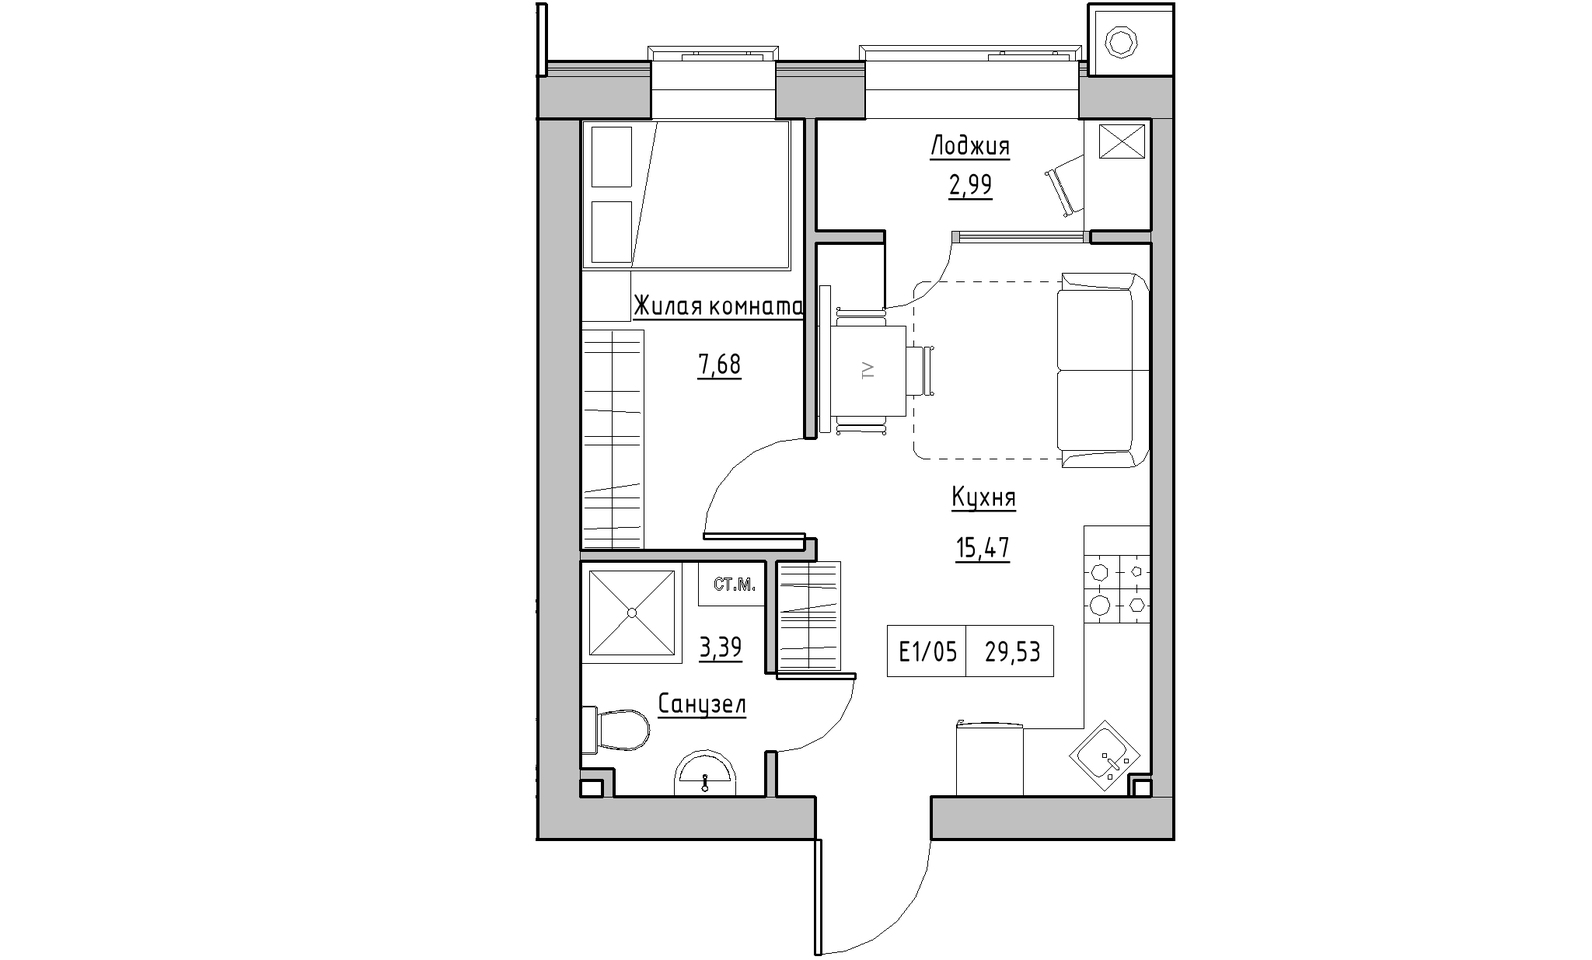 Планировка 1-к квартира площей 29.53м2, KS-014-02/0006.